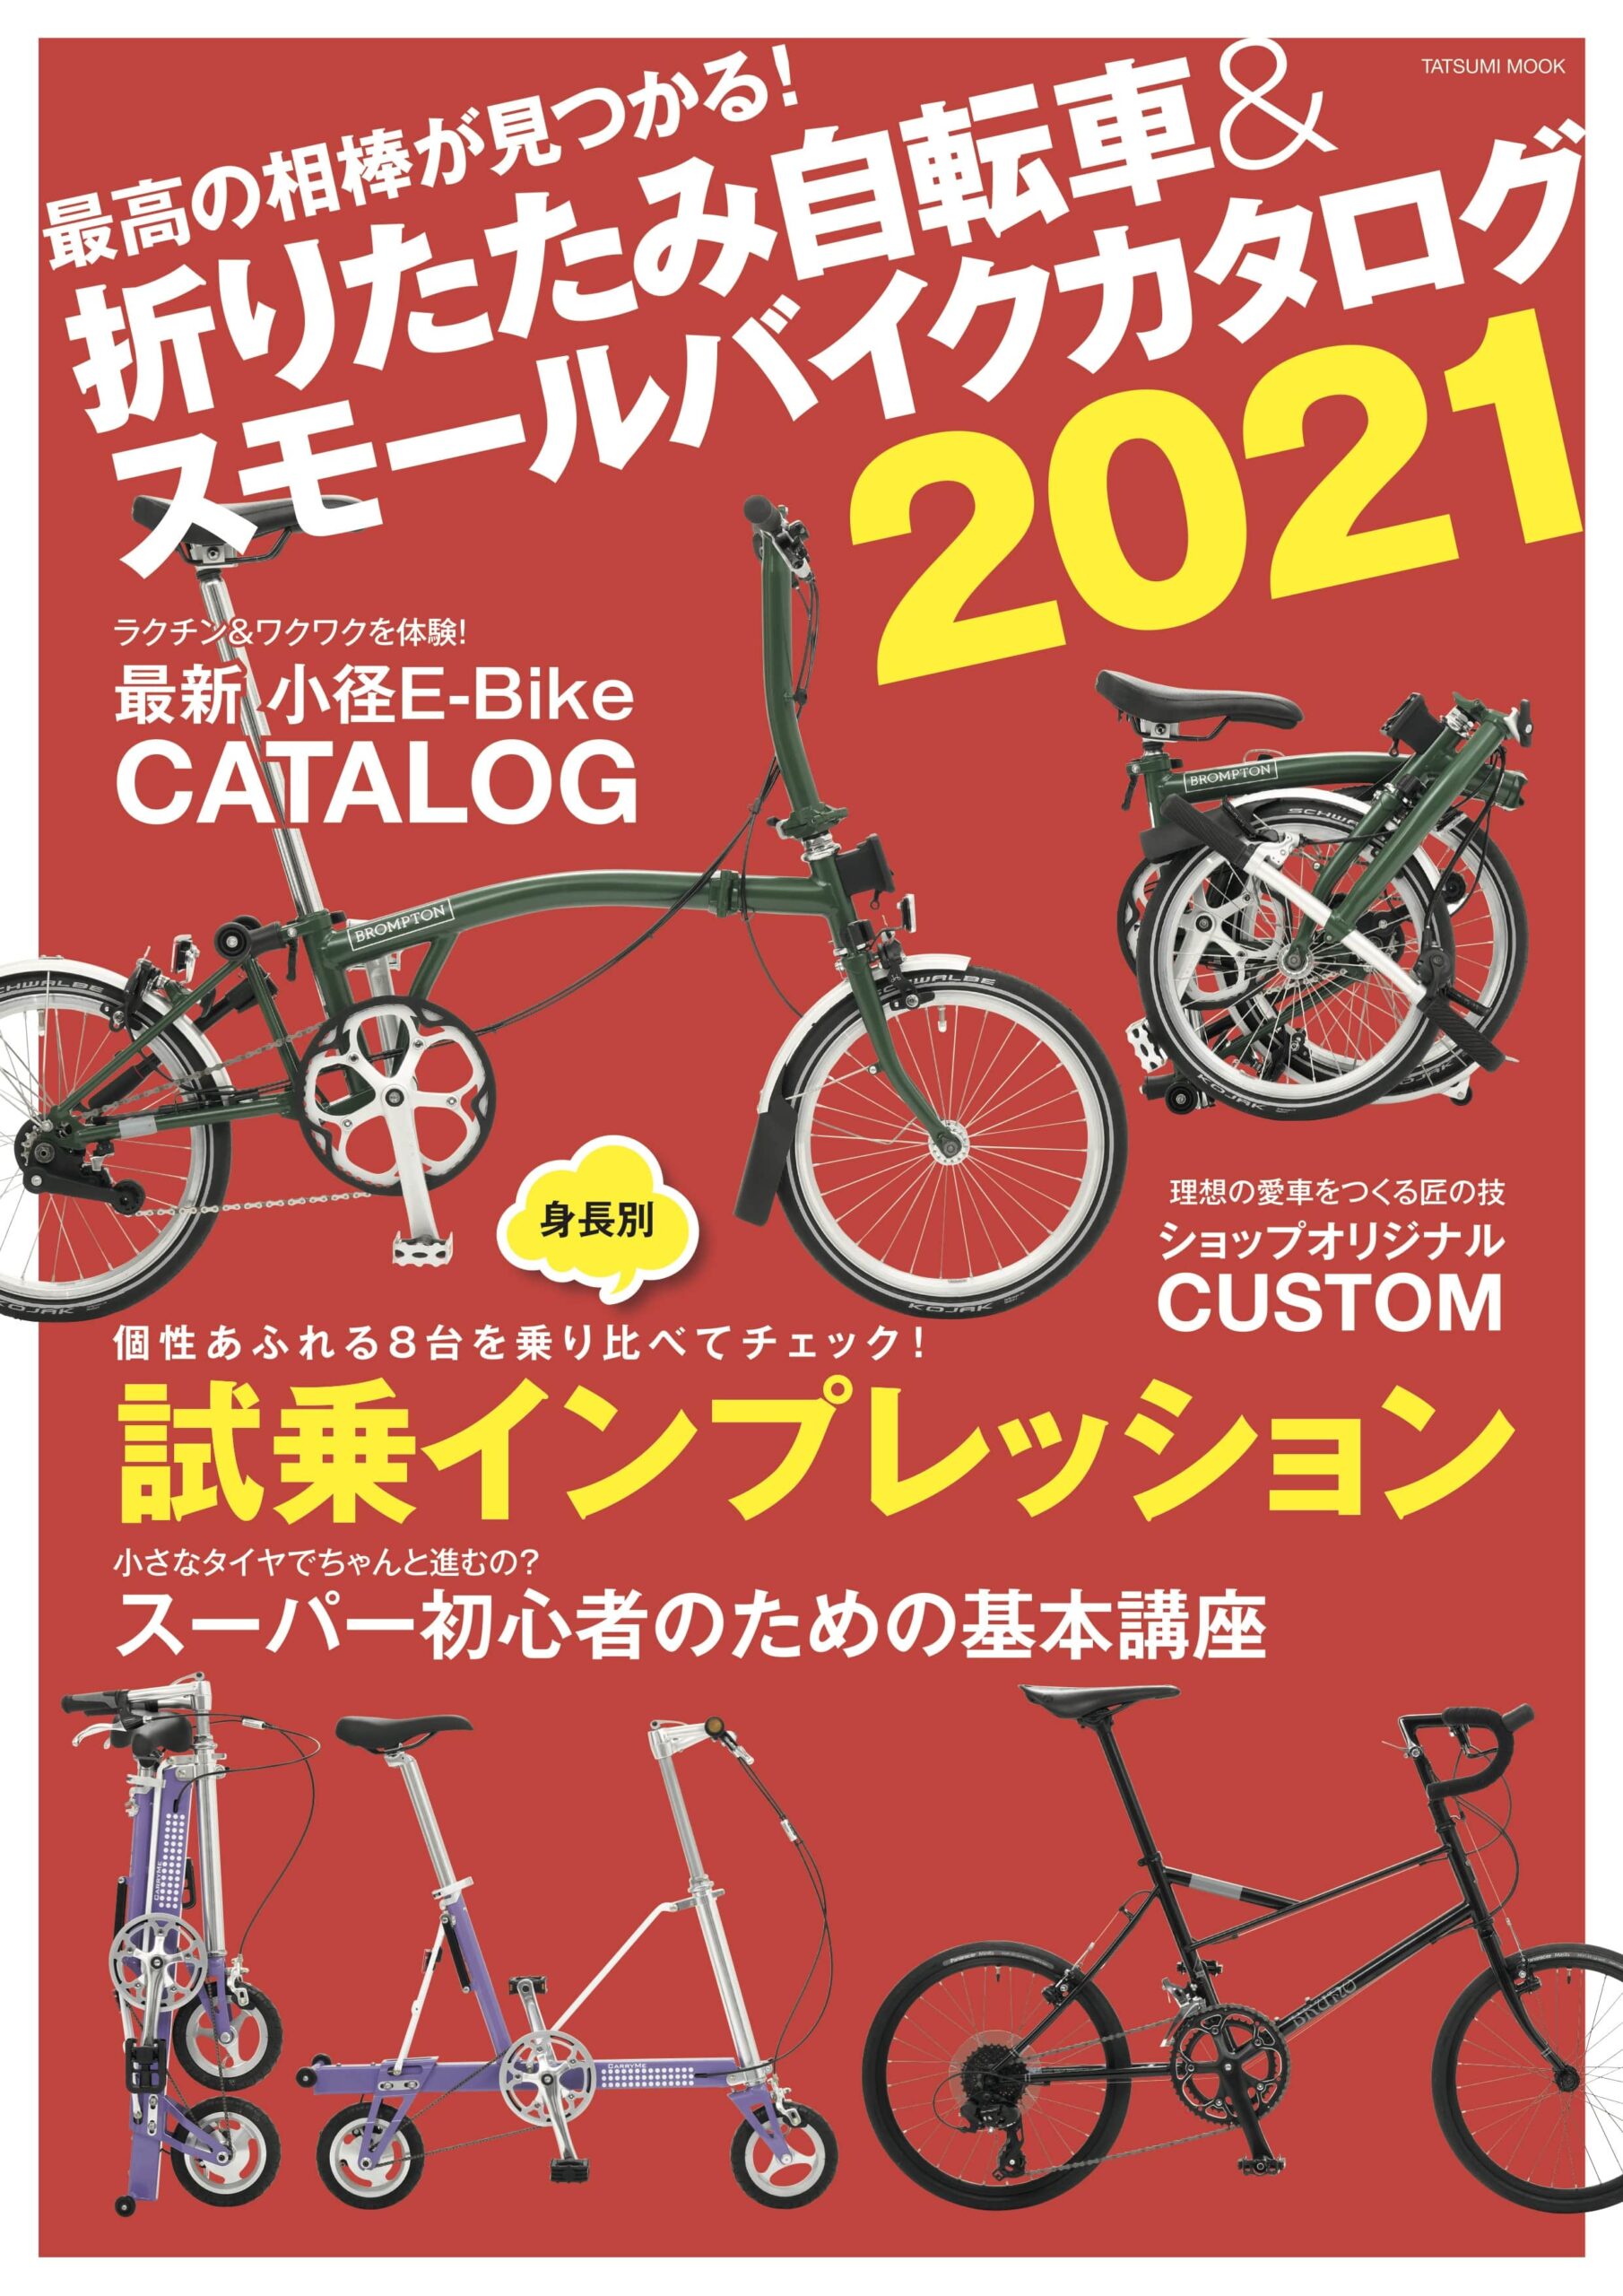 最高の相棒が見つかる『折りたたみ自転車&スモールバイクカタログ 2021